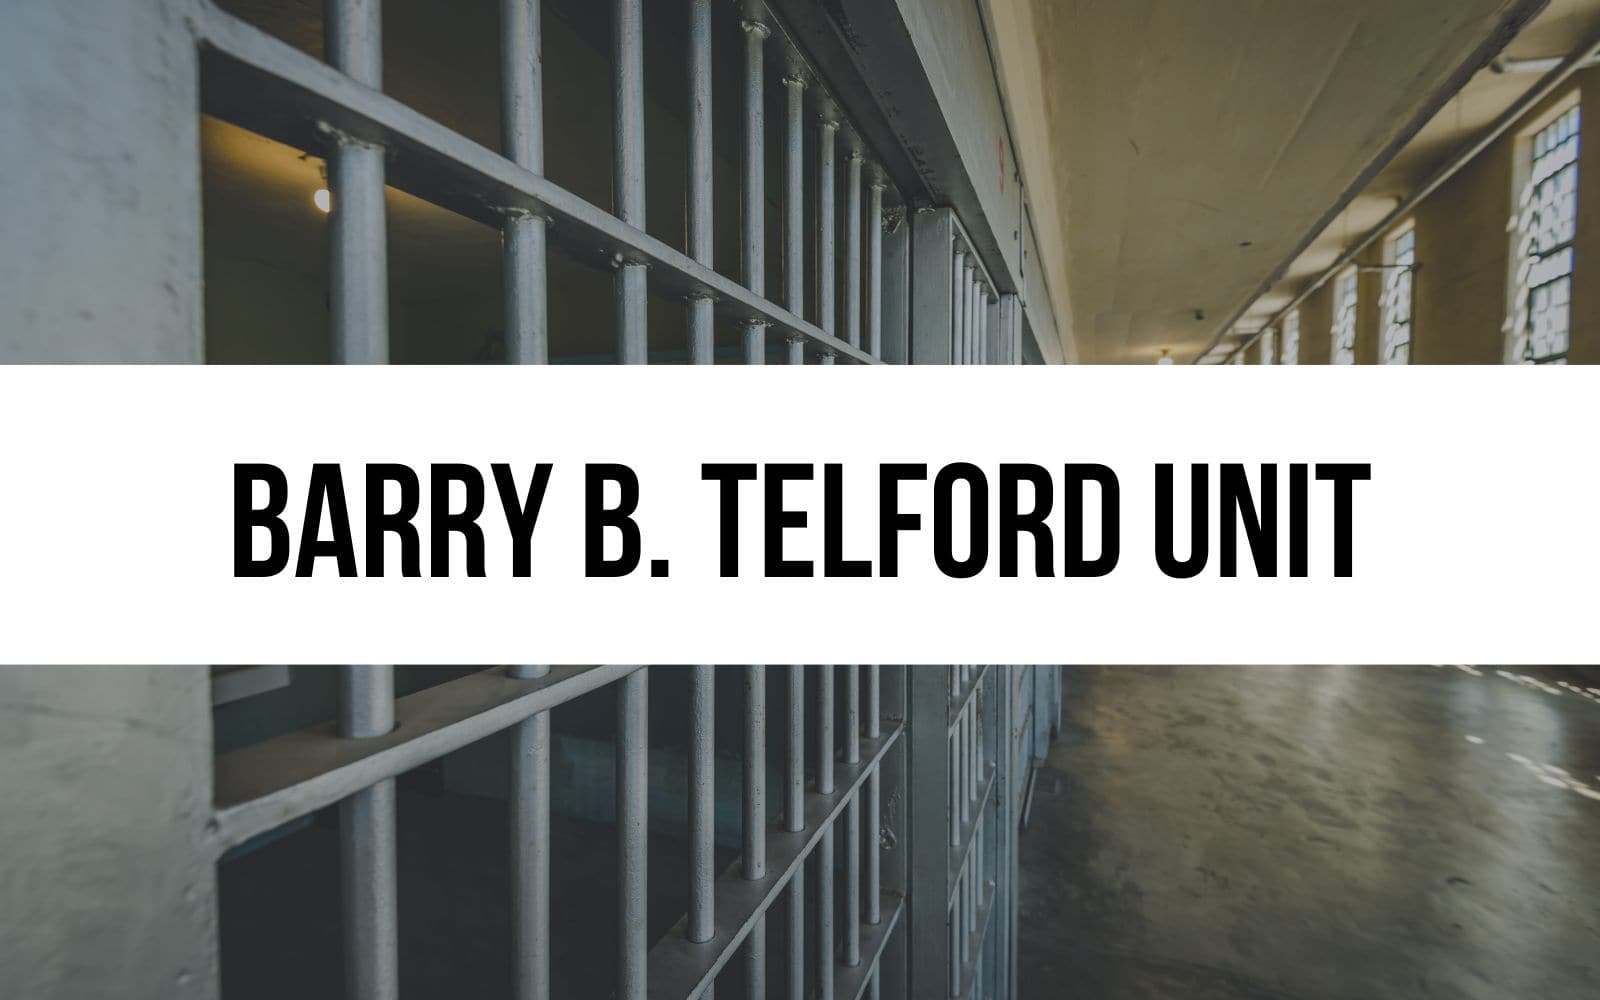 Barry B. Telford Unit